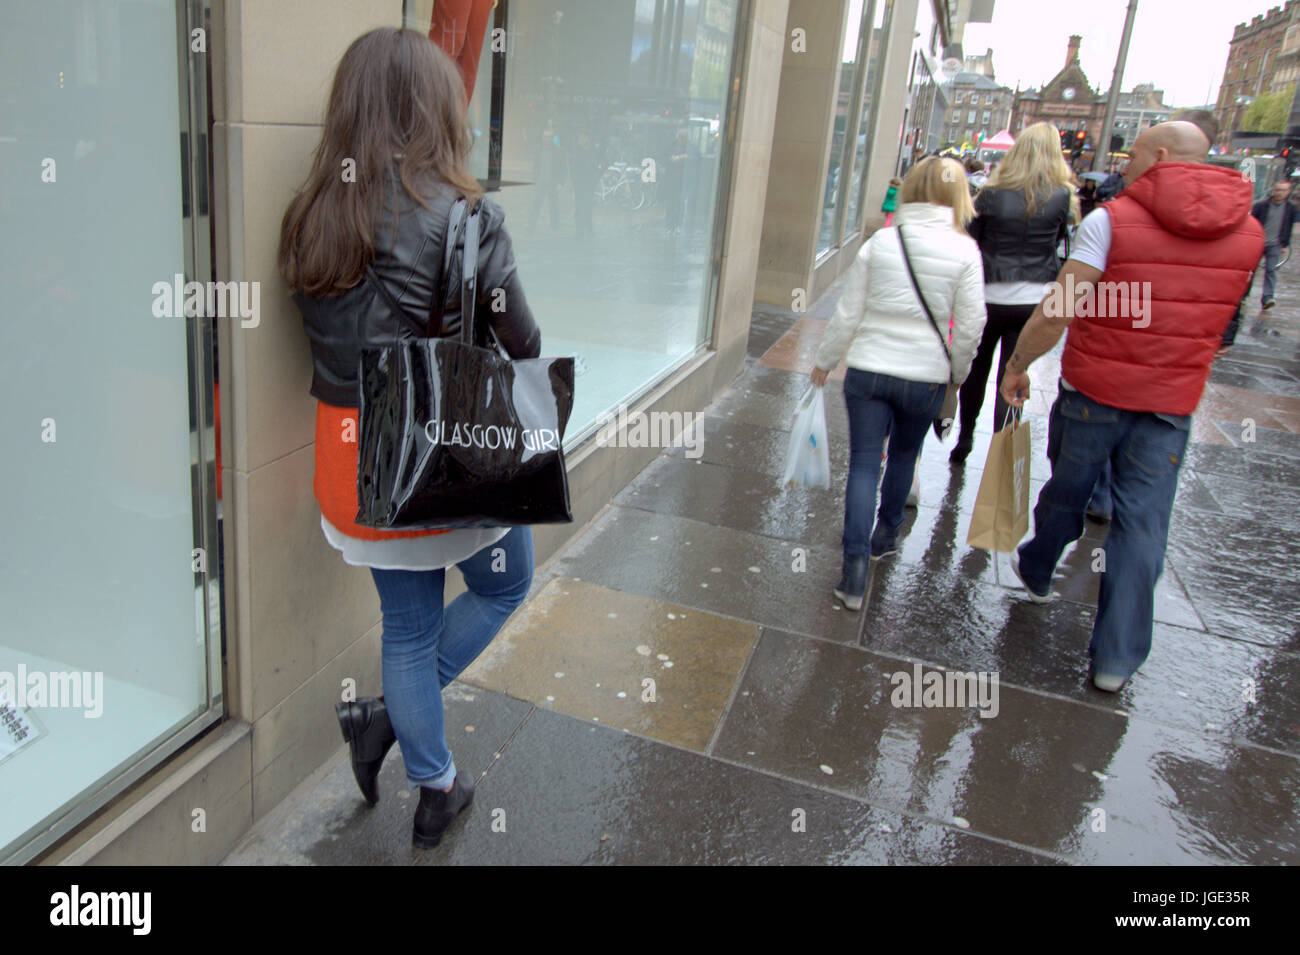 Strada di Glasgow Buchanan Street shoppers Glasgow ragazza adolescente sacco appoggiata contro la parete Foto Stock